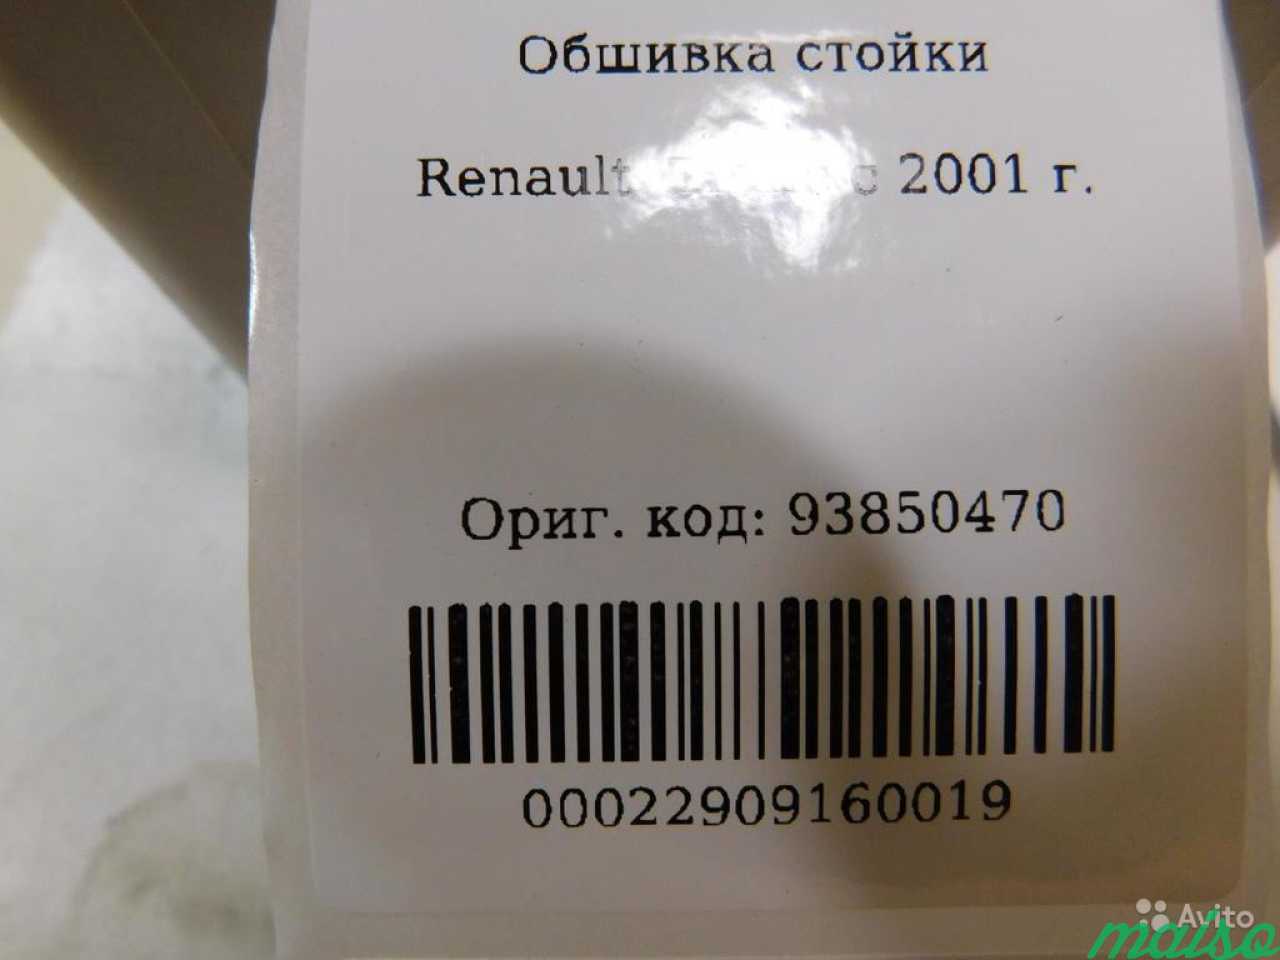 Обшивка стойки Renault Trafic II X83 2001-2014 в Санкт-Петербурге. Фото 4